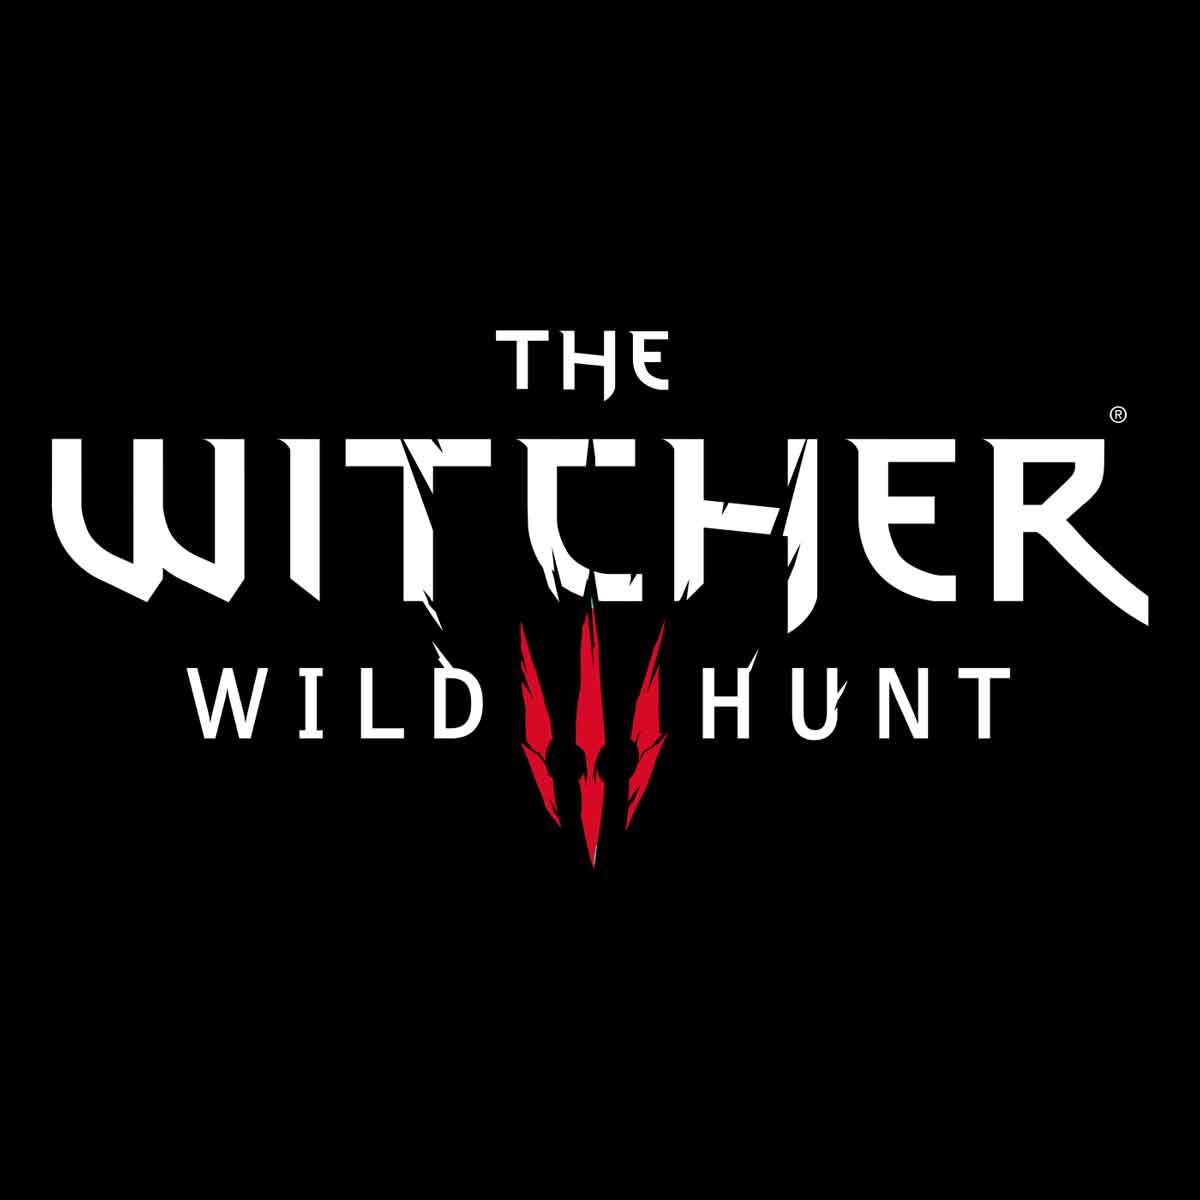 El logo de The Witcher tiene un estilo de letra gótica y medieval.